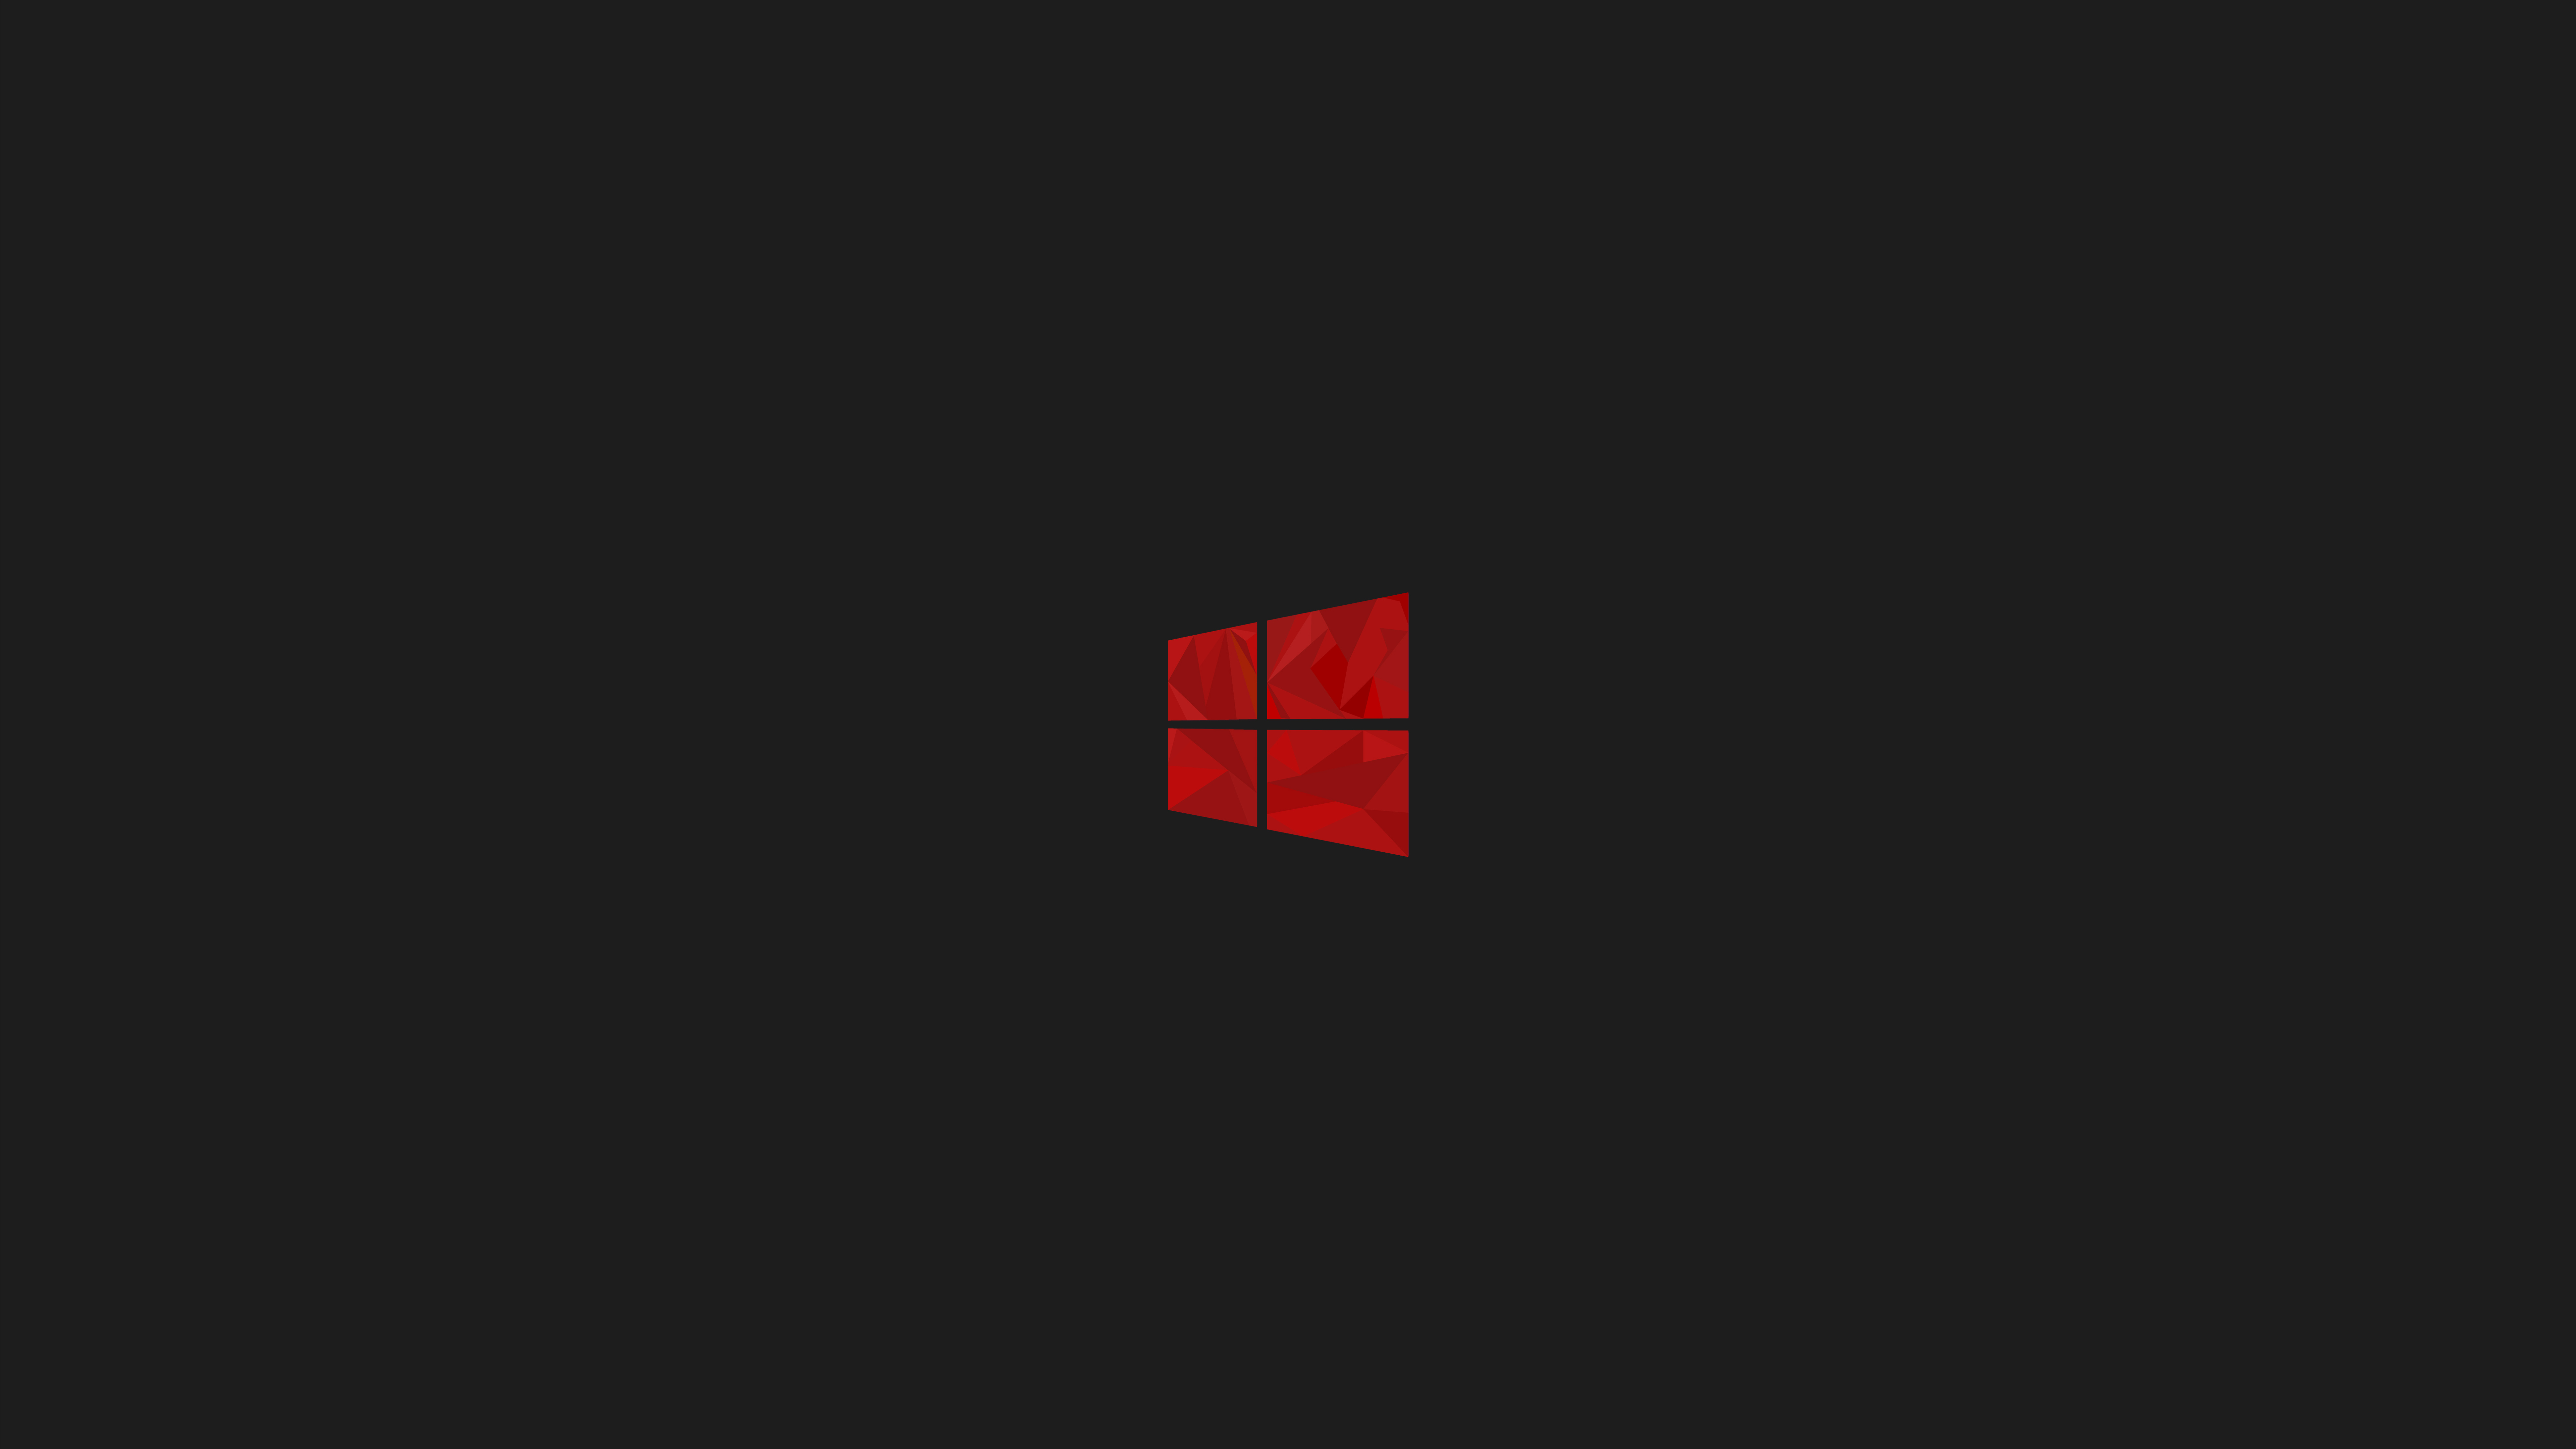 Logo Windows 10 đỏ đơn giản 8K 4K đem lại cho bạn sự tinh tế cùng phong cách thiết kế đẹp mắt. Với màu sắc đỏ tươi mới, logo Windows 10 này sẽ giúp chiếc máy tính của bạn trở nên đặc biệt và độc đáo hơn. Hãy cùng xem hình ảnh để trải nghiệm sự đẹp của logo này.